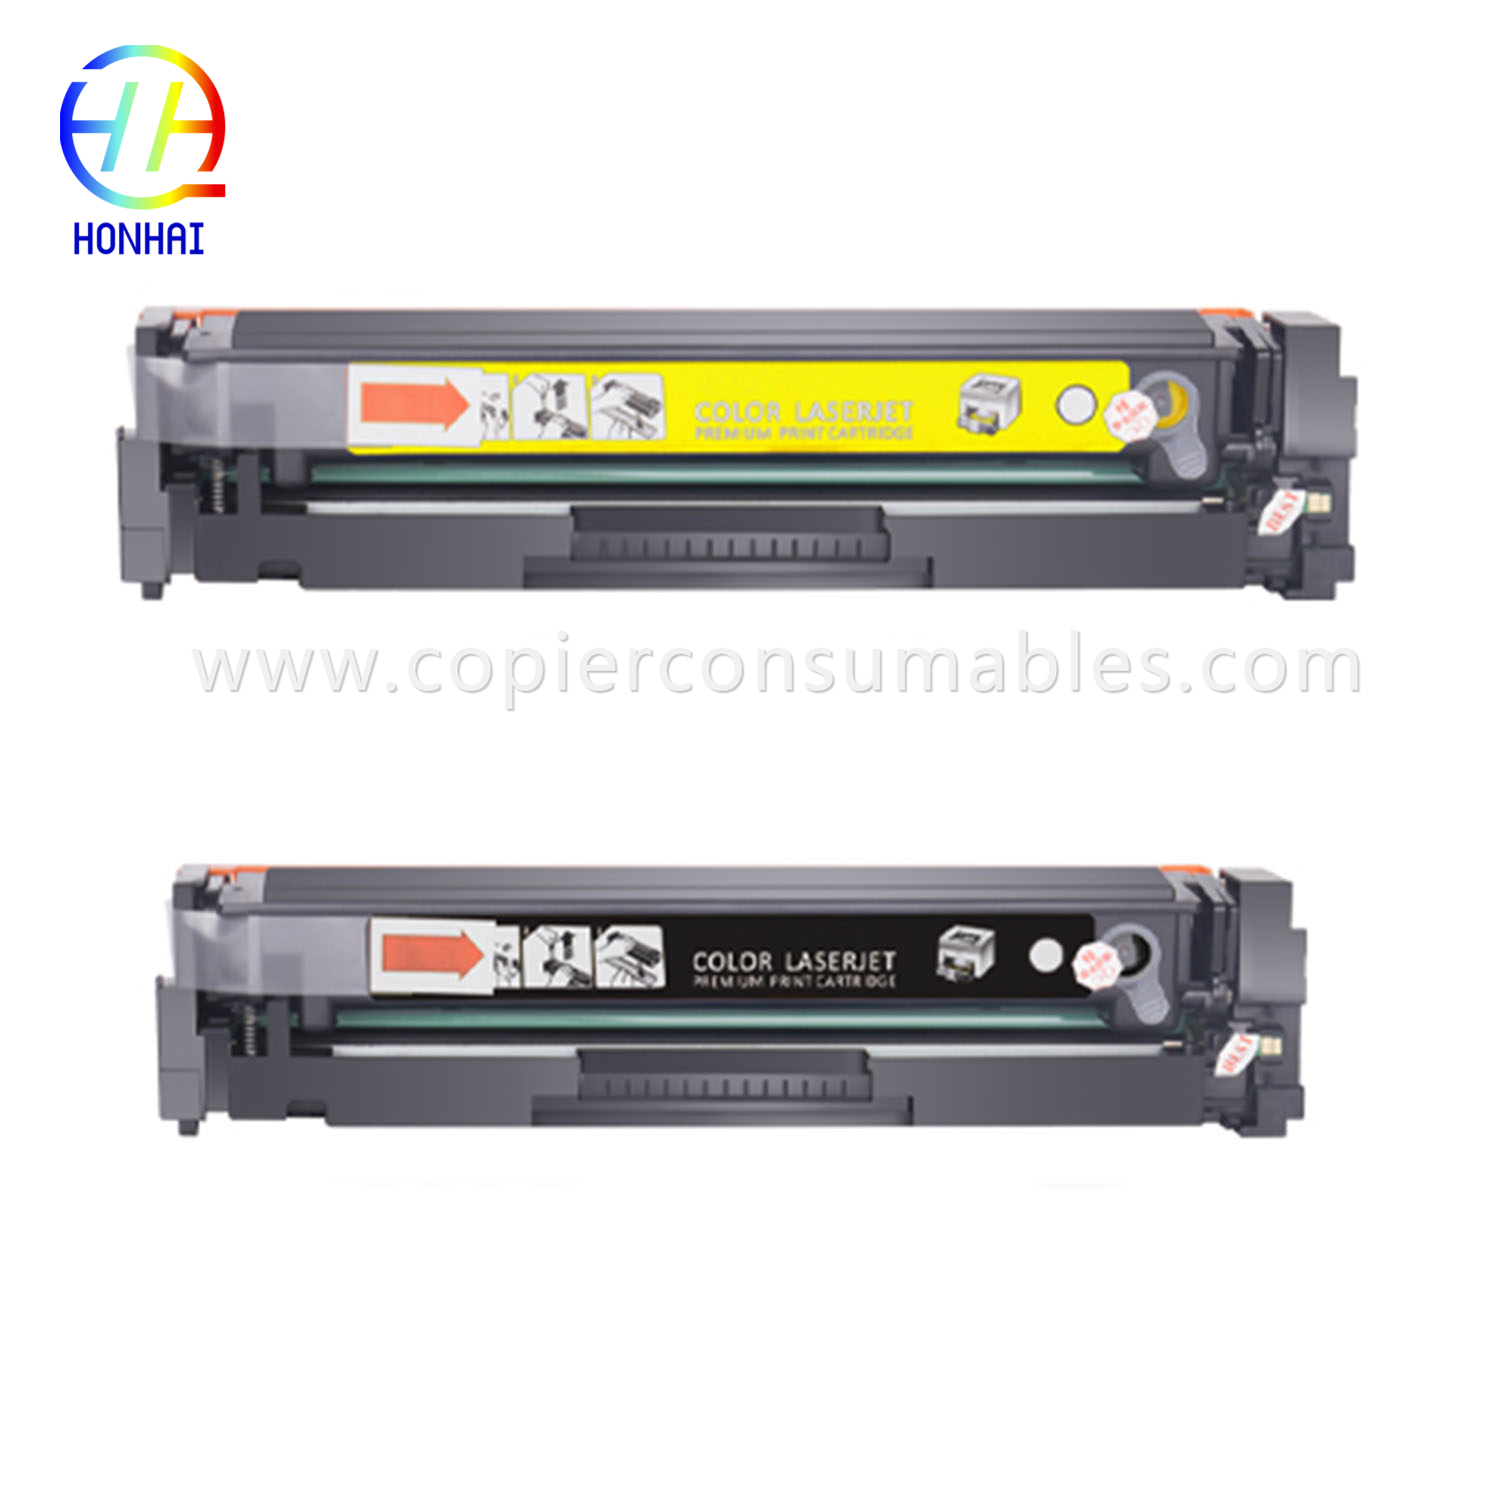 Toner-kartutxoa HP Color Laserjet PRO Mfp M180 M180n M181 M181fw M154A M154nw (CF531A CF532A CF533A) (2) 拷贝